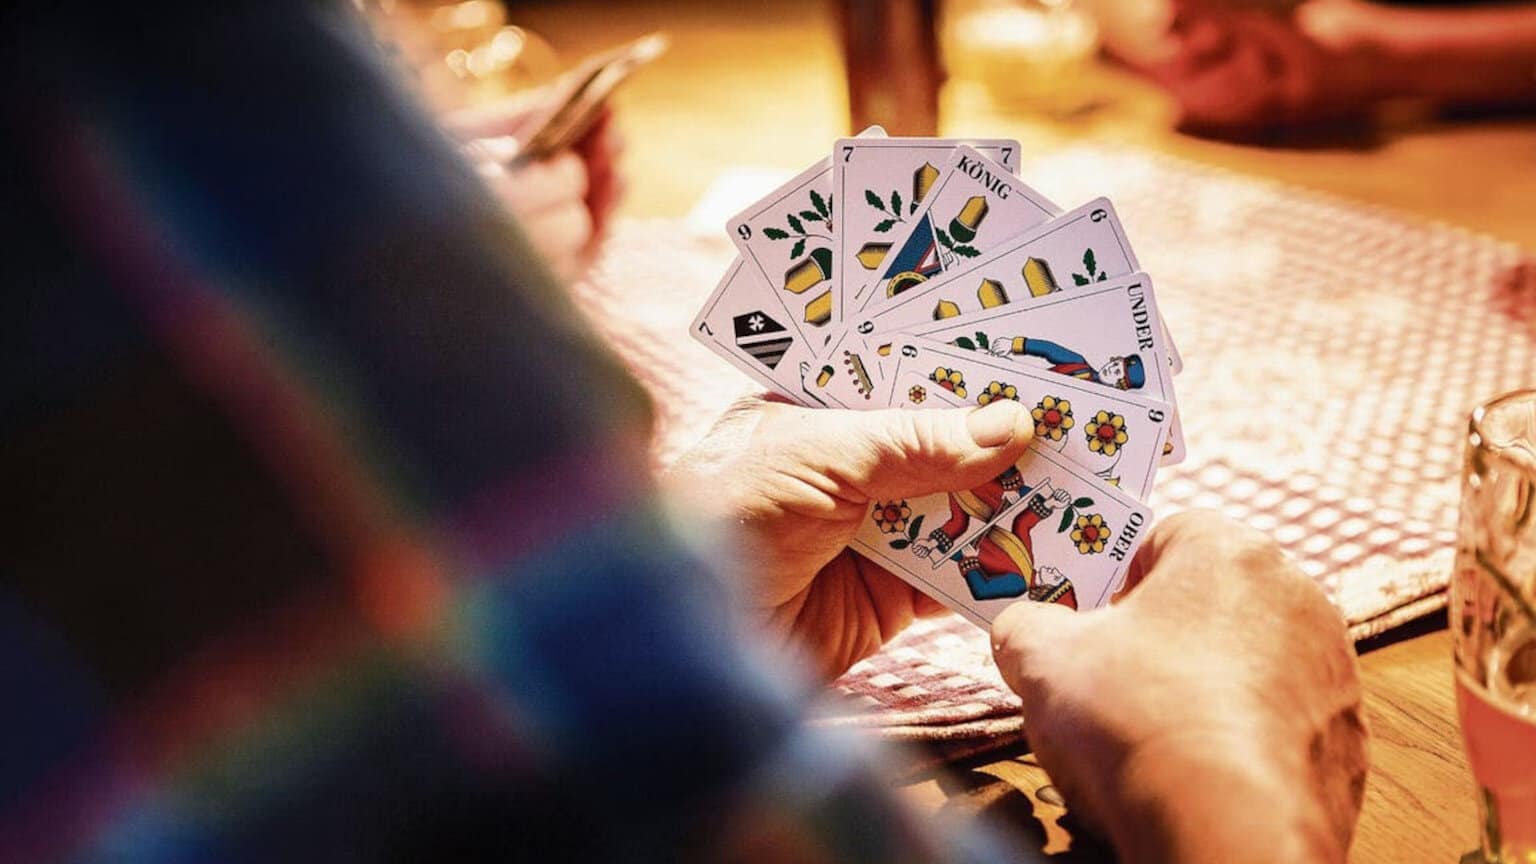 Kulturwissenschaftlerin dreht völlig frei: Traditionelle Kartenspiele sind rassistisch und sexistisch